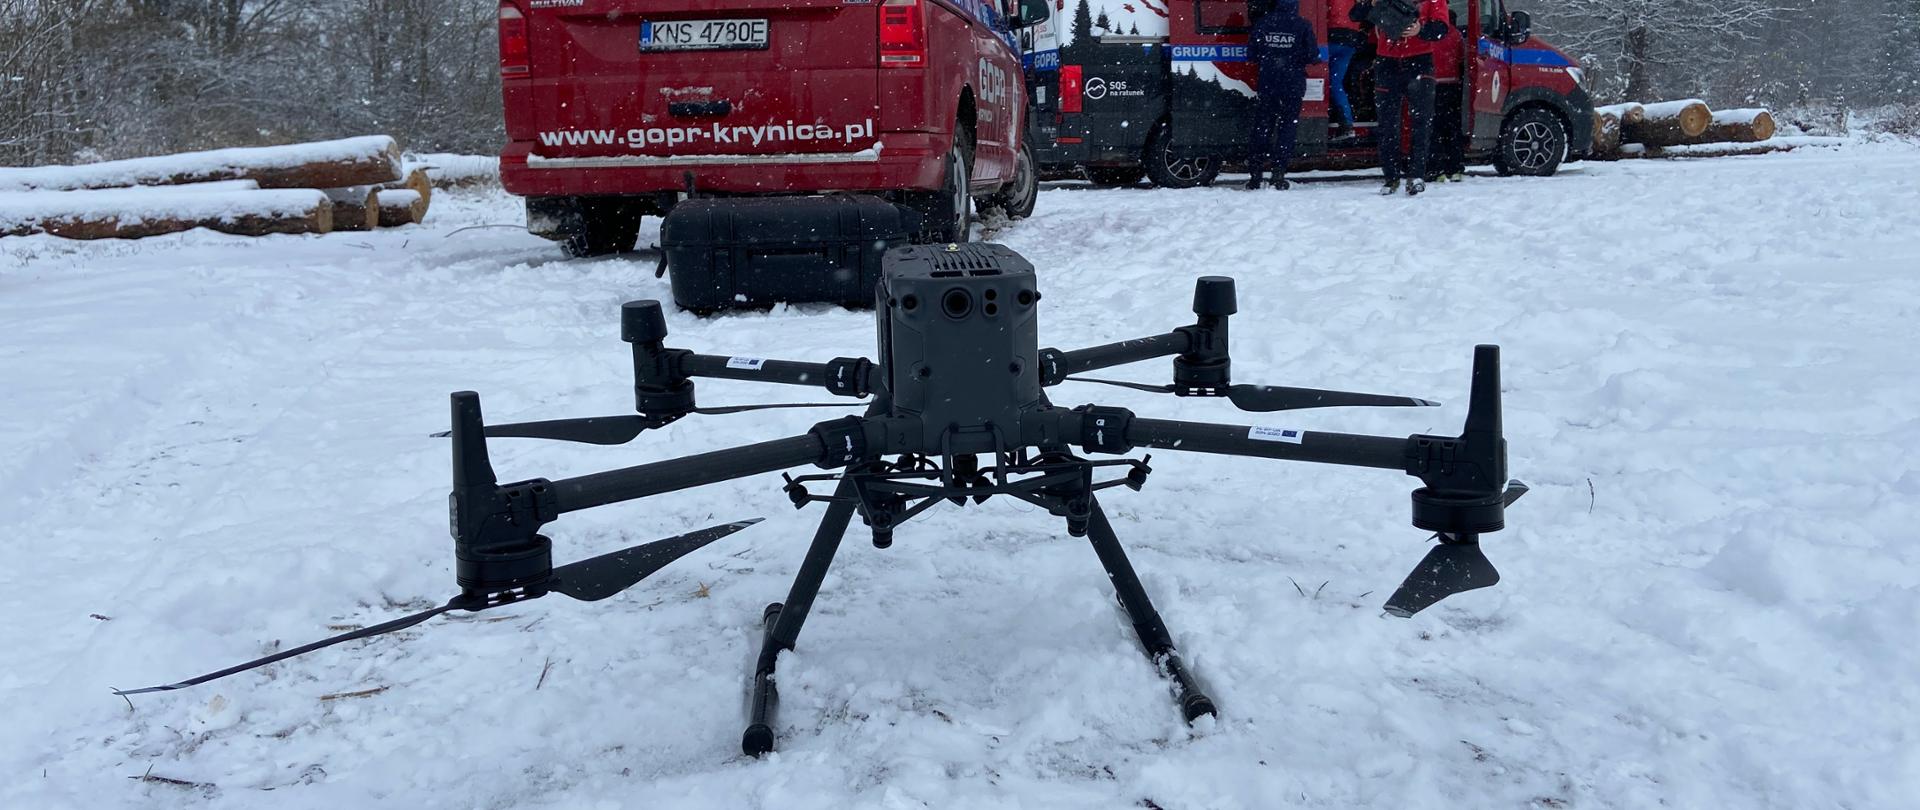 Na pokrytej śniegiem łące na pierwszym planie ustawiony jest dron (quadrocopter) tło stanowią samochody operacyjne (busy) Górskiego Ochotniczego Pogotowia Ratunkowego